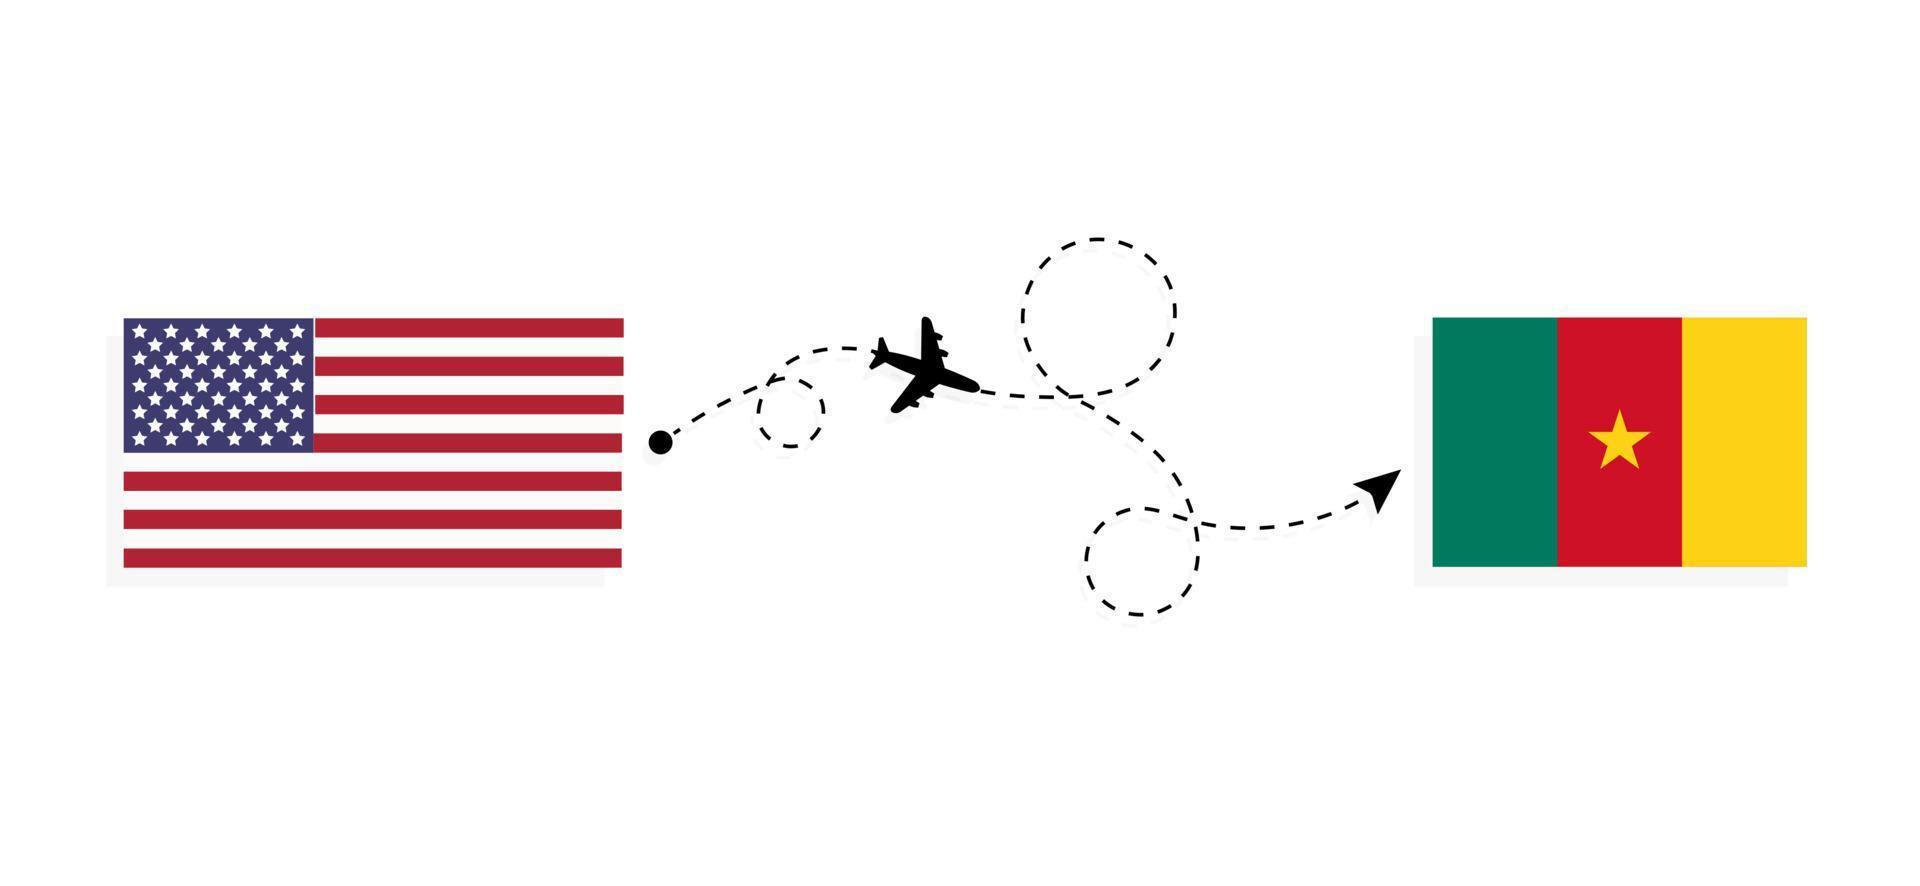 vol et voyage des états-unis au cameroun par concept de voyage en avion de passagers vecteur